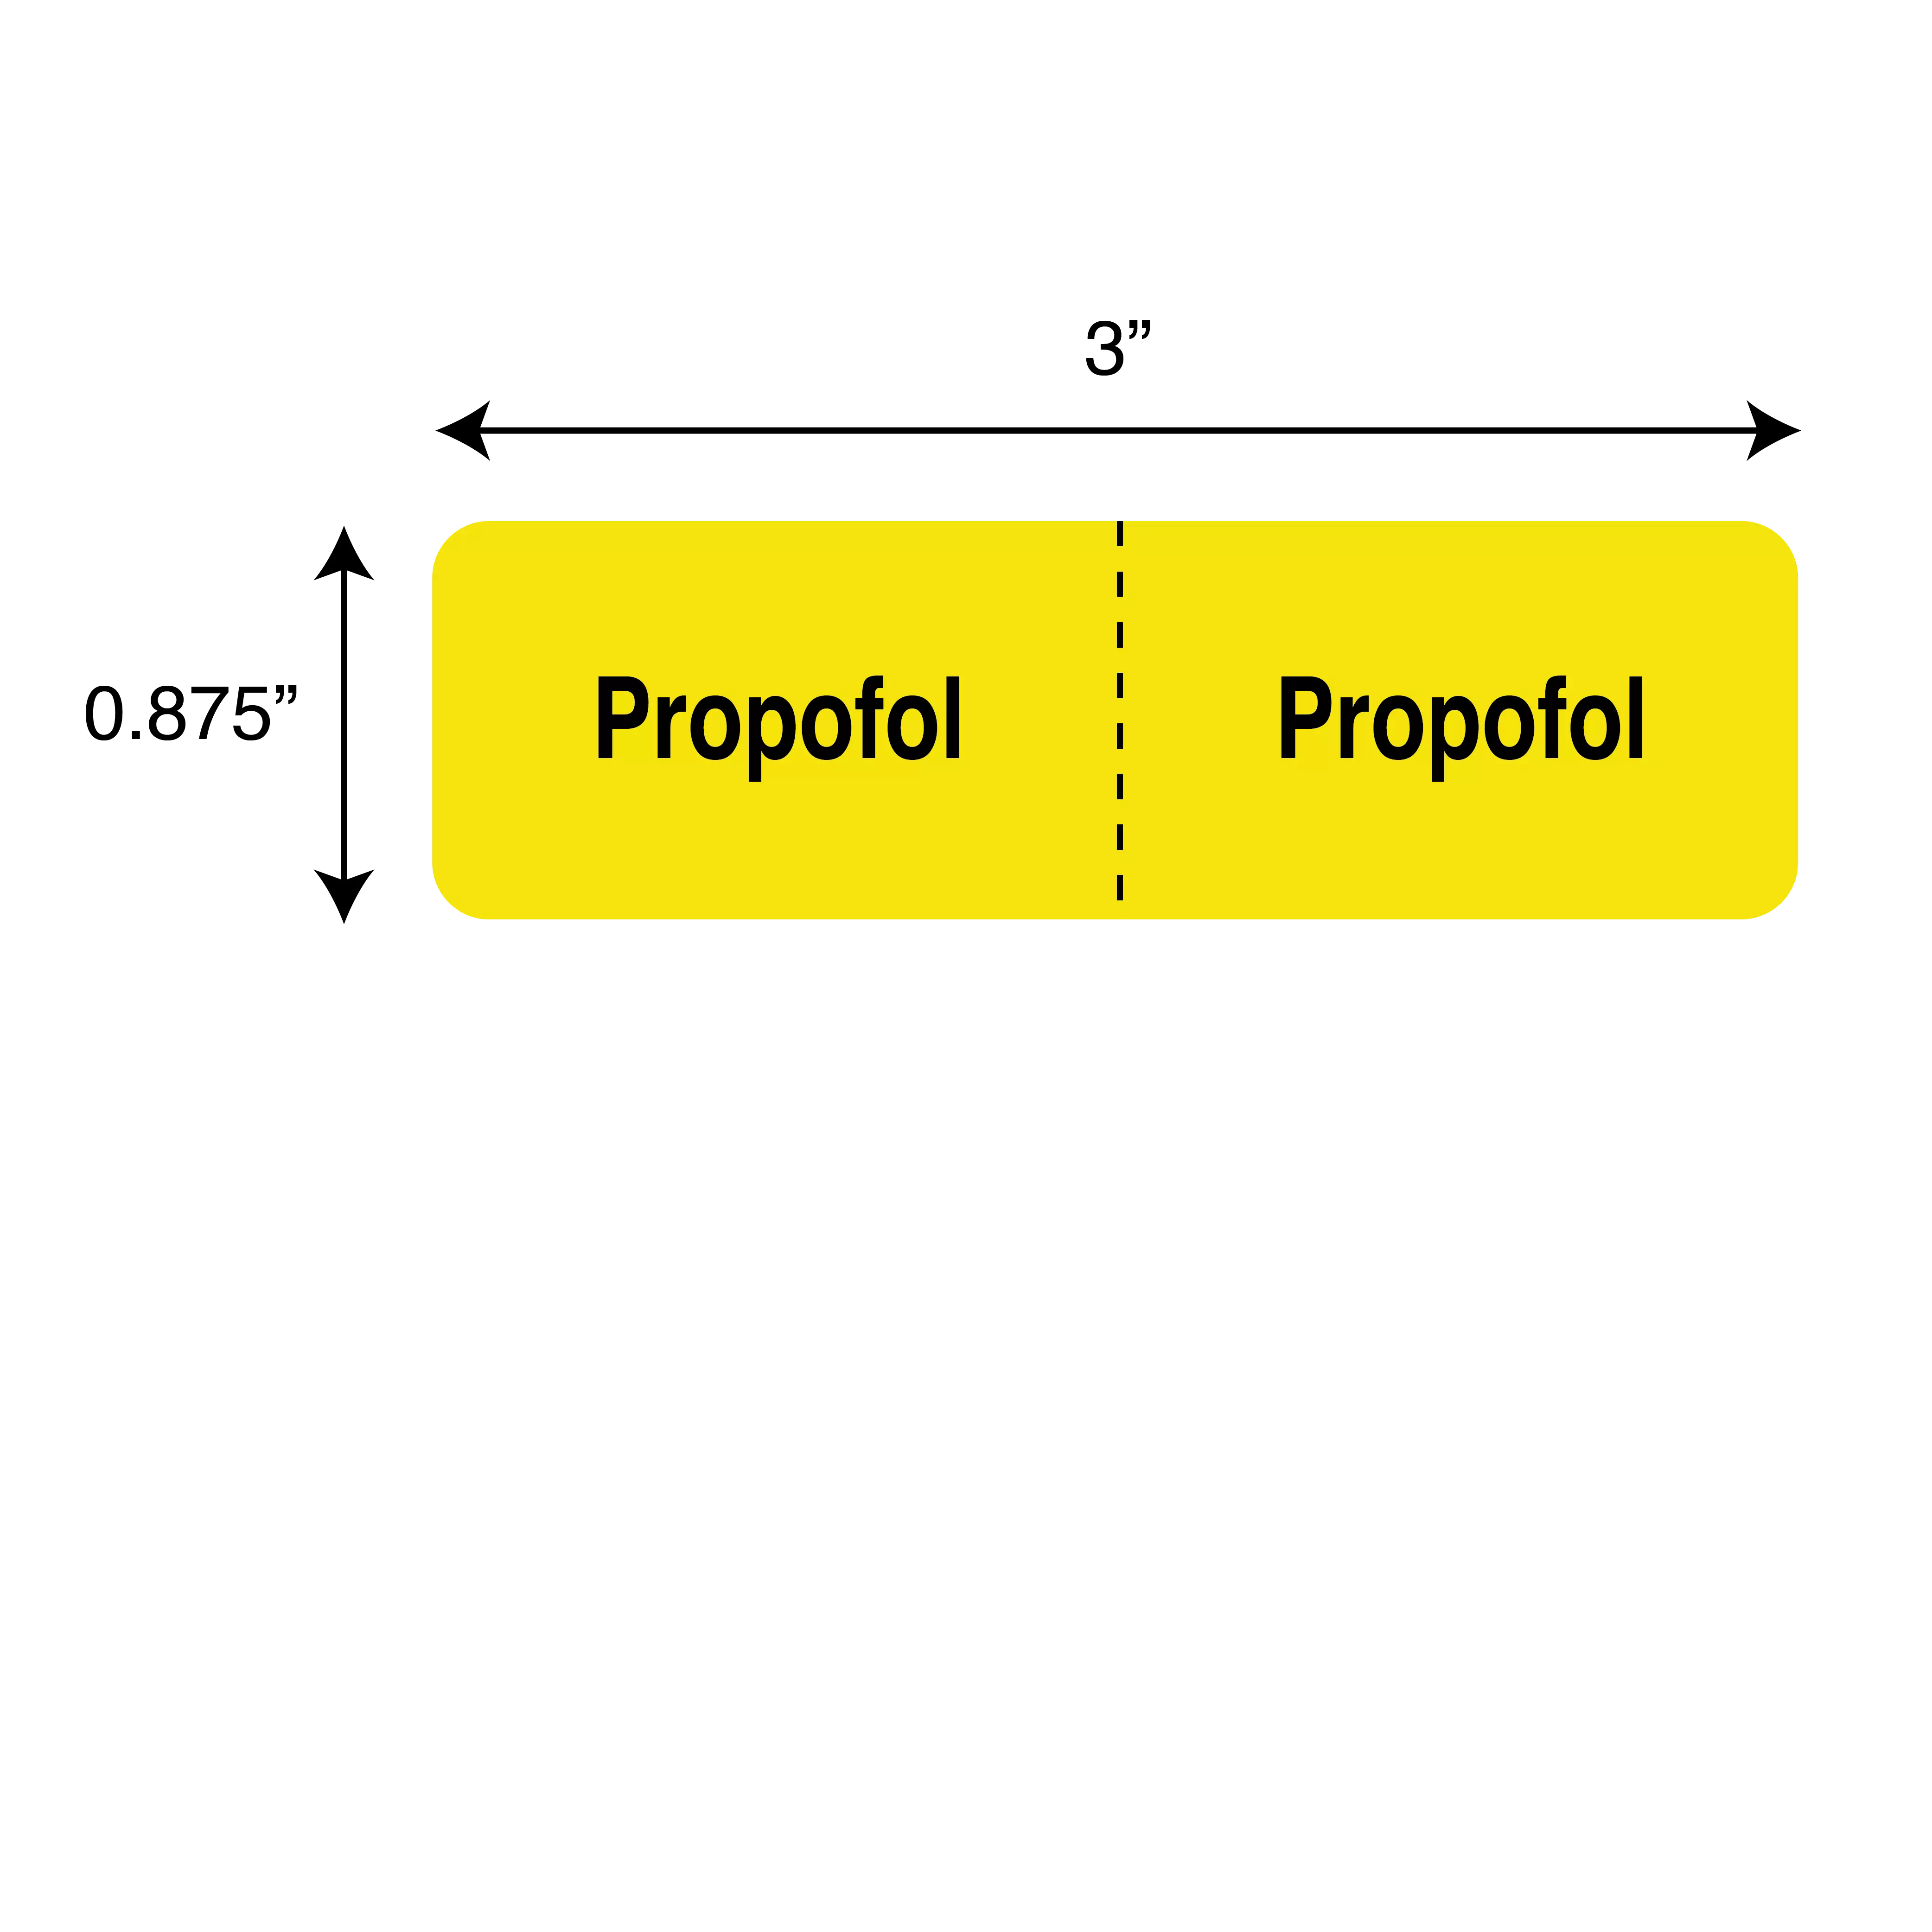 IV Drug Line Label - Propofol/Propofol